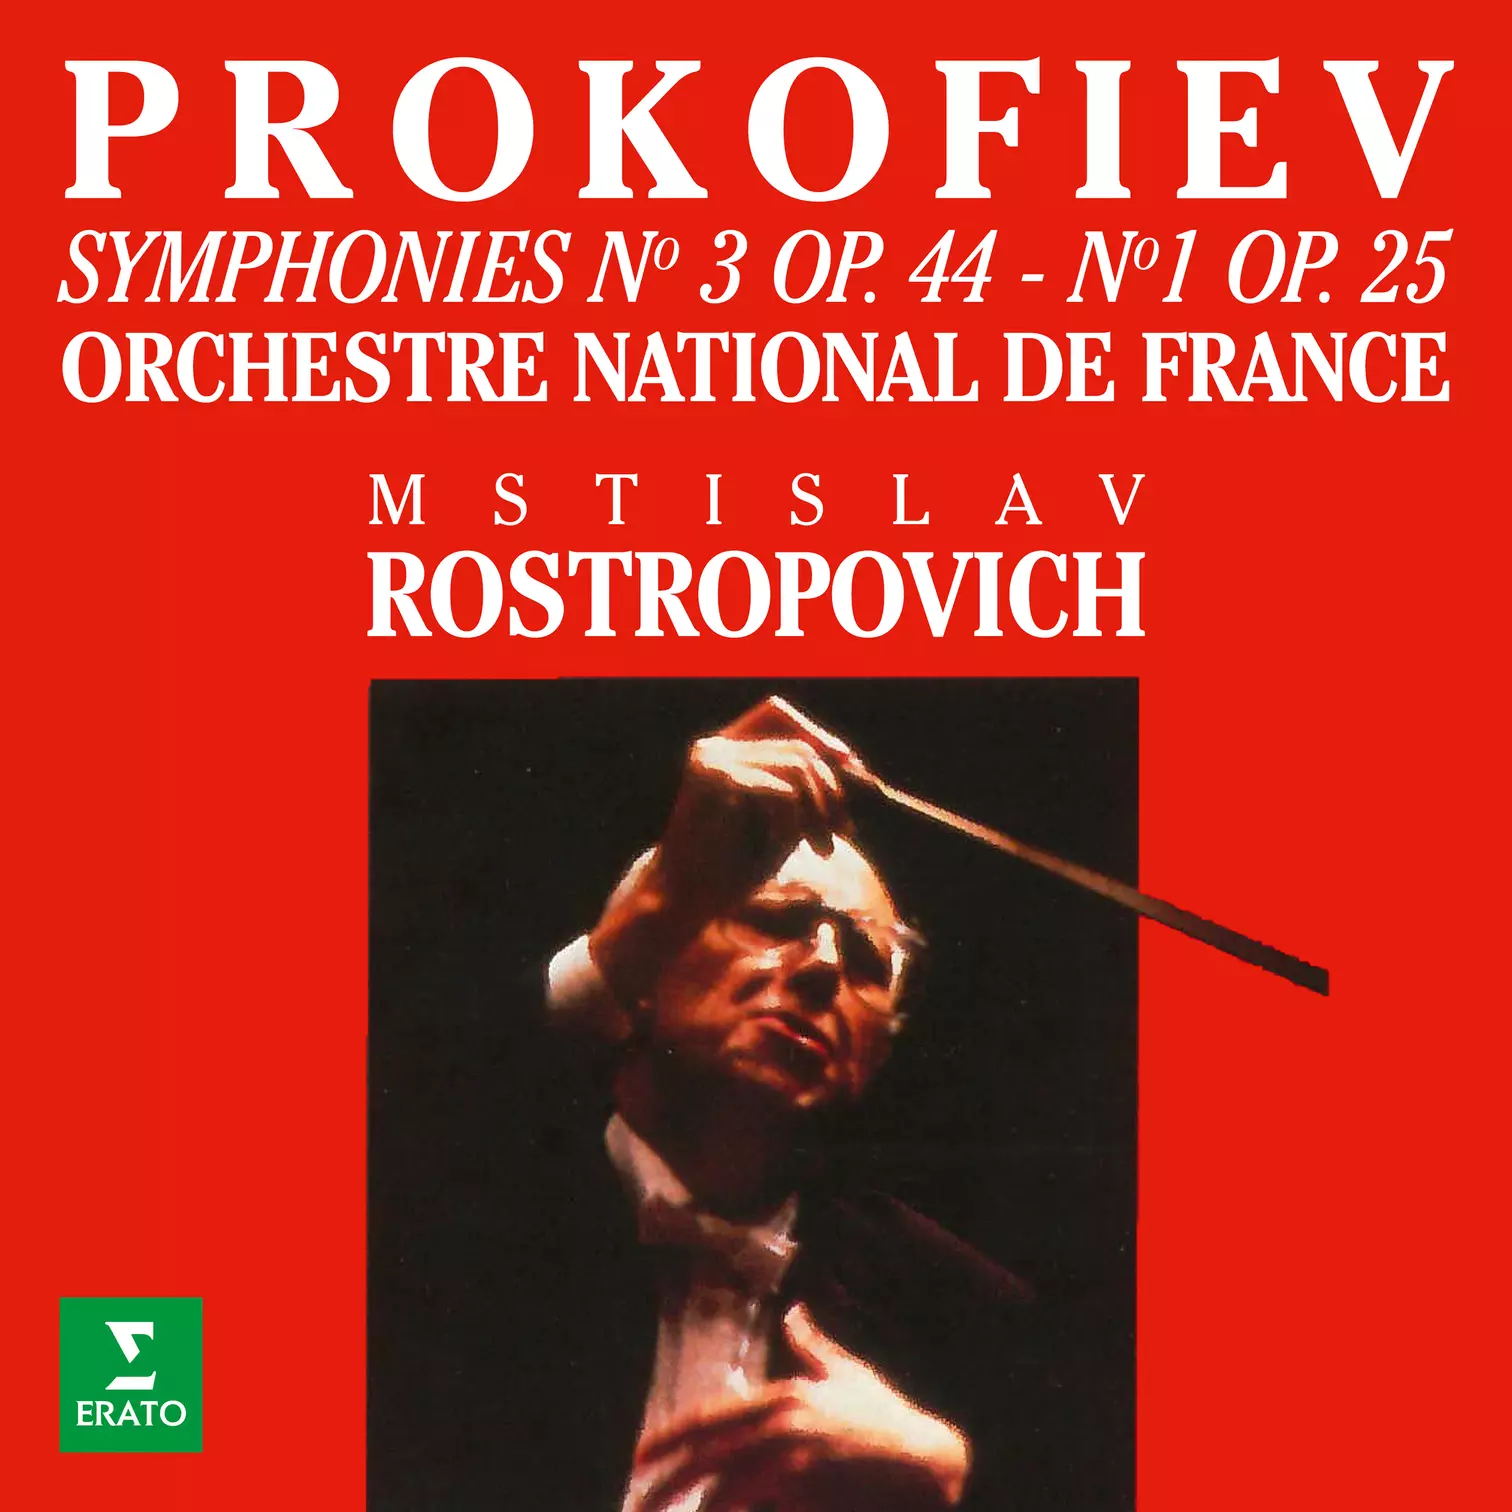 Prokofiev: Symphonies Nos. 1 “Classical” & 3